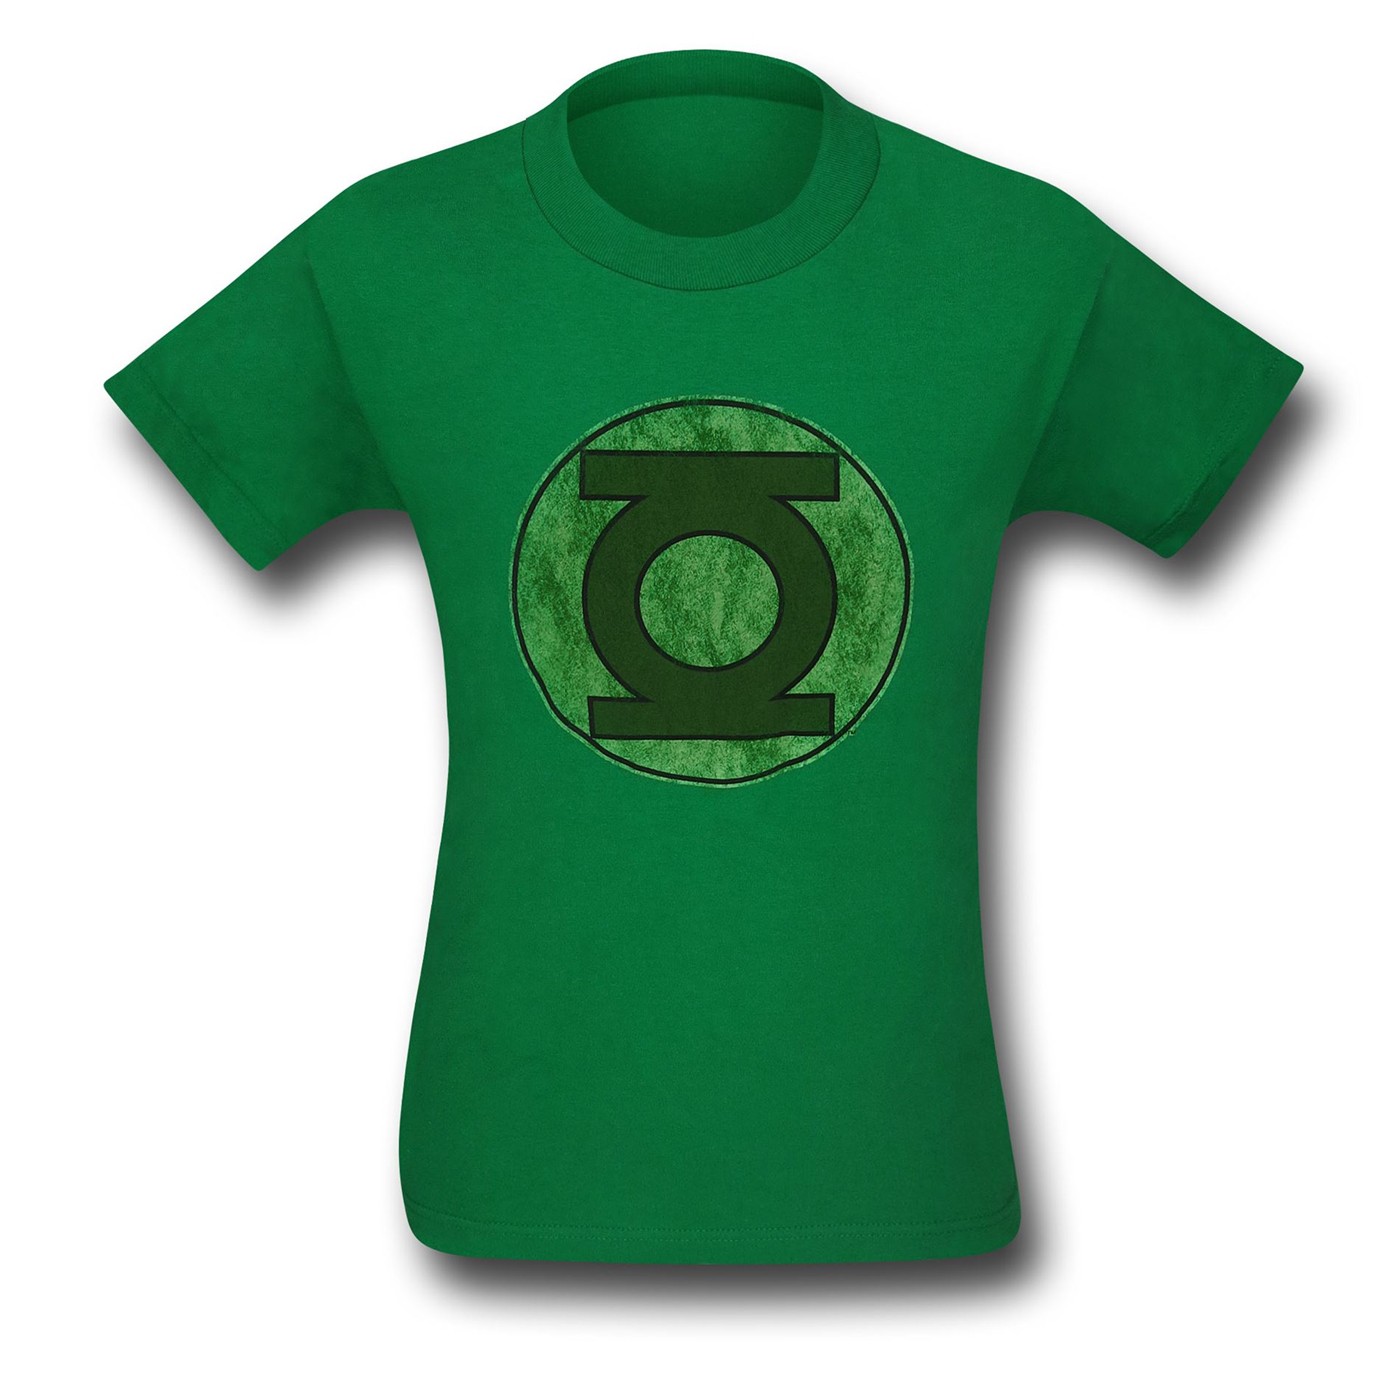 Green Lantern Worn Symbol T-Shirt